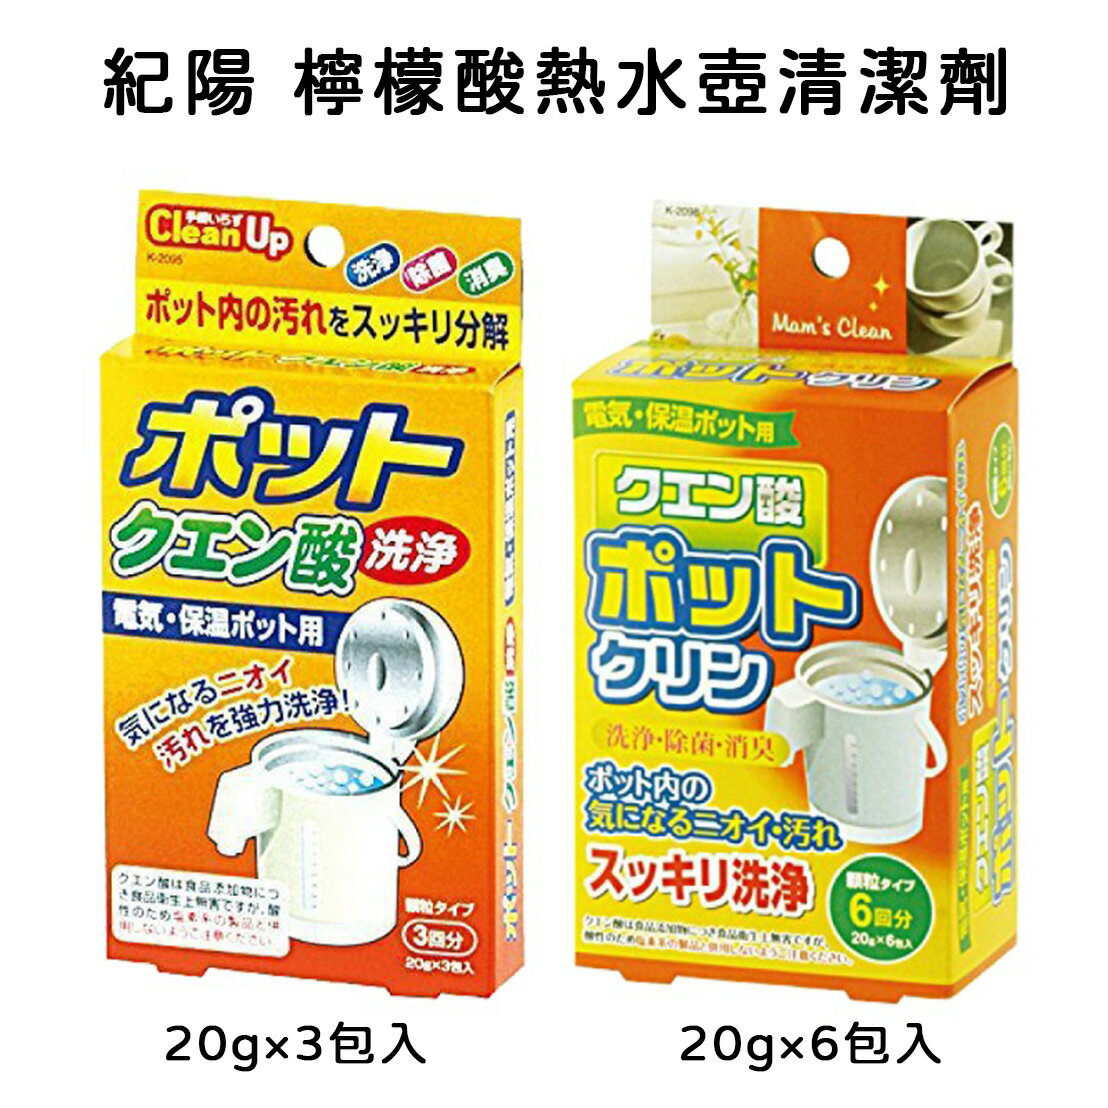 紀陽 檸檬酸熱水壺洗淨劑20g×3包入/20g×6包入